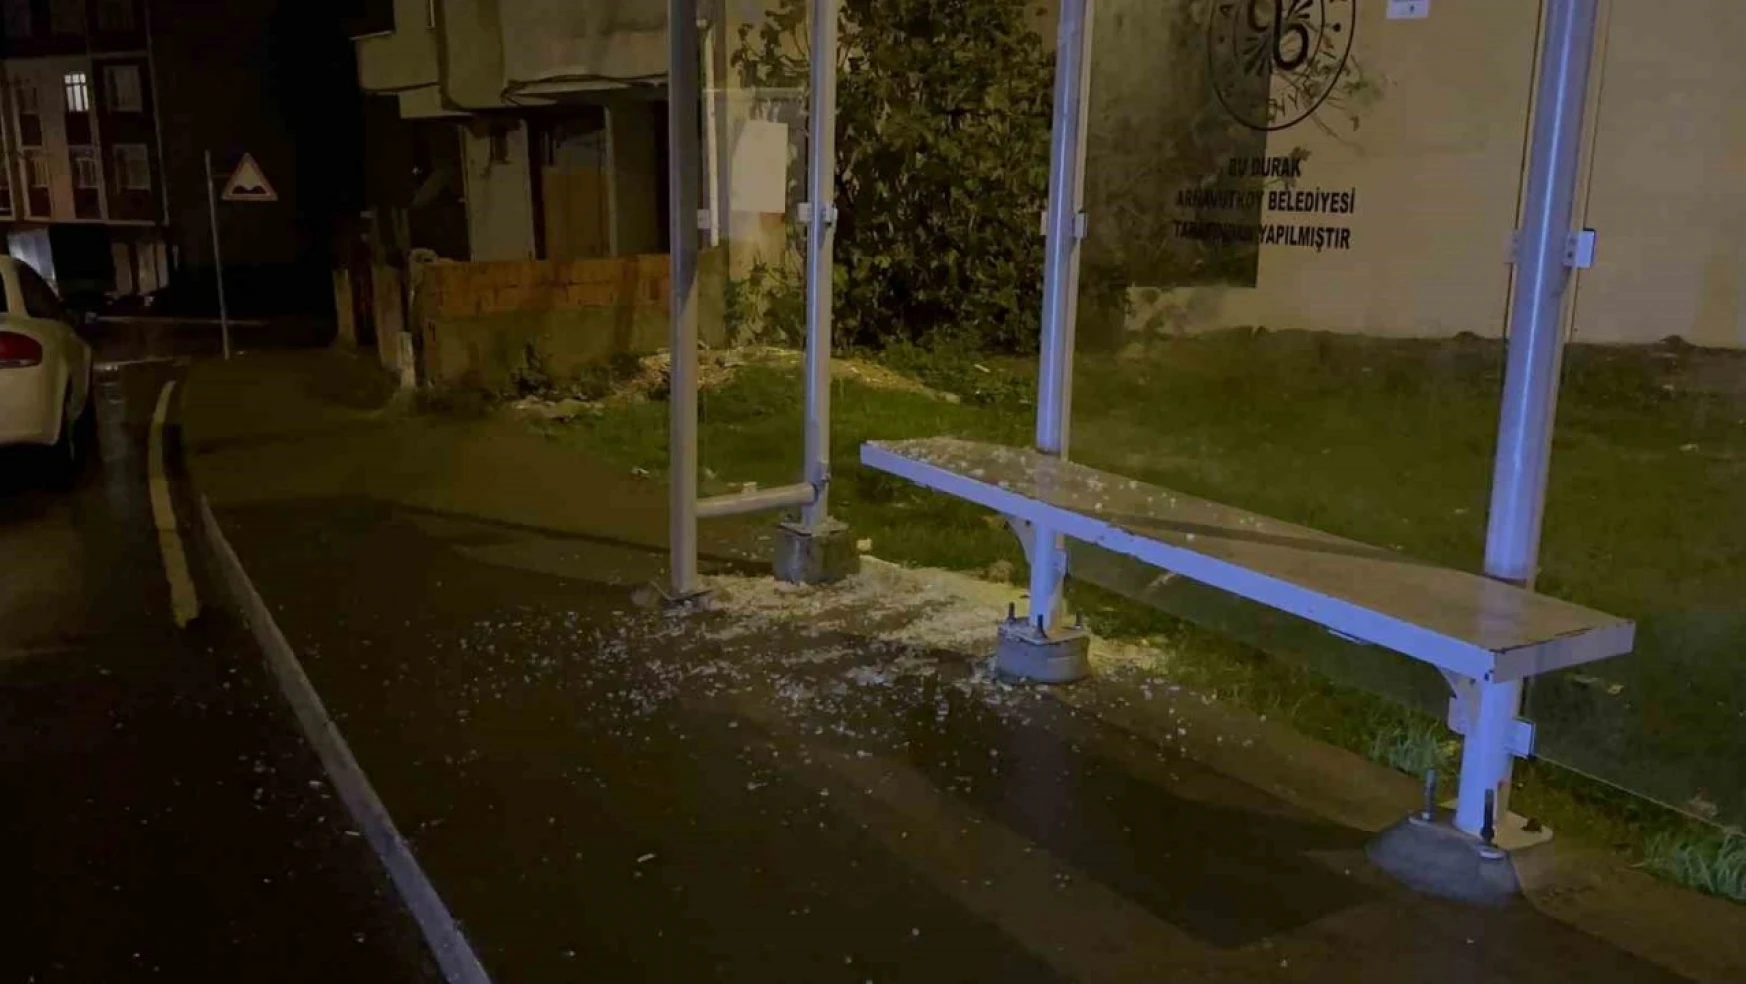 Arnavutköy'de kan donduran olay: İETT durağında bekleyen eski dünürüne kurşun yağdırdı